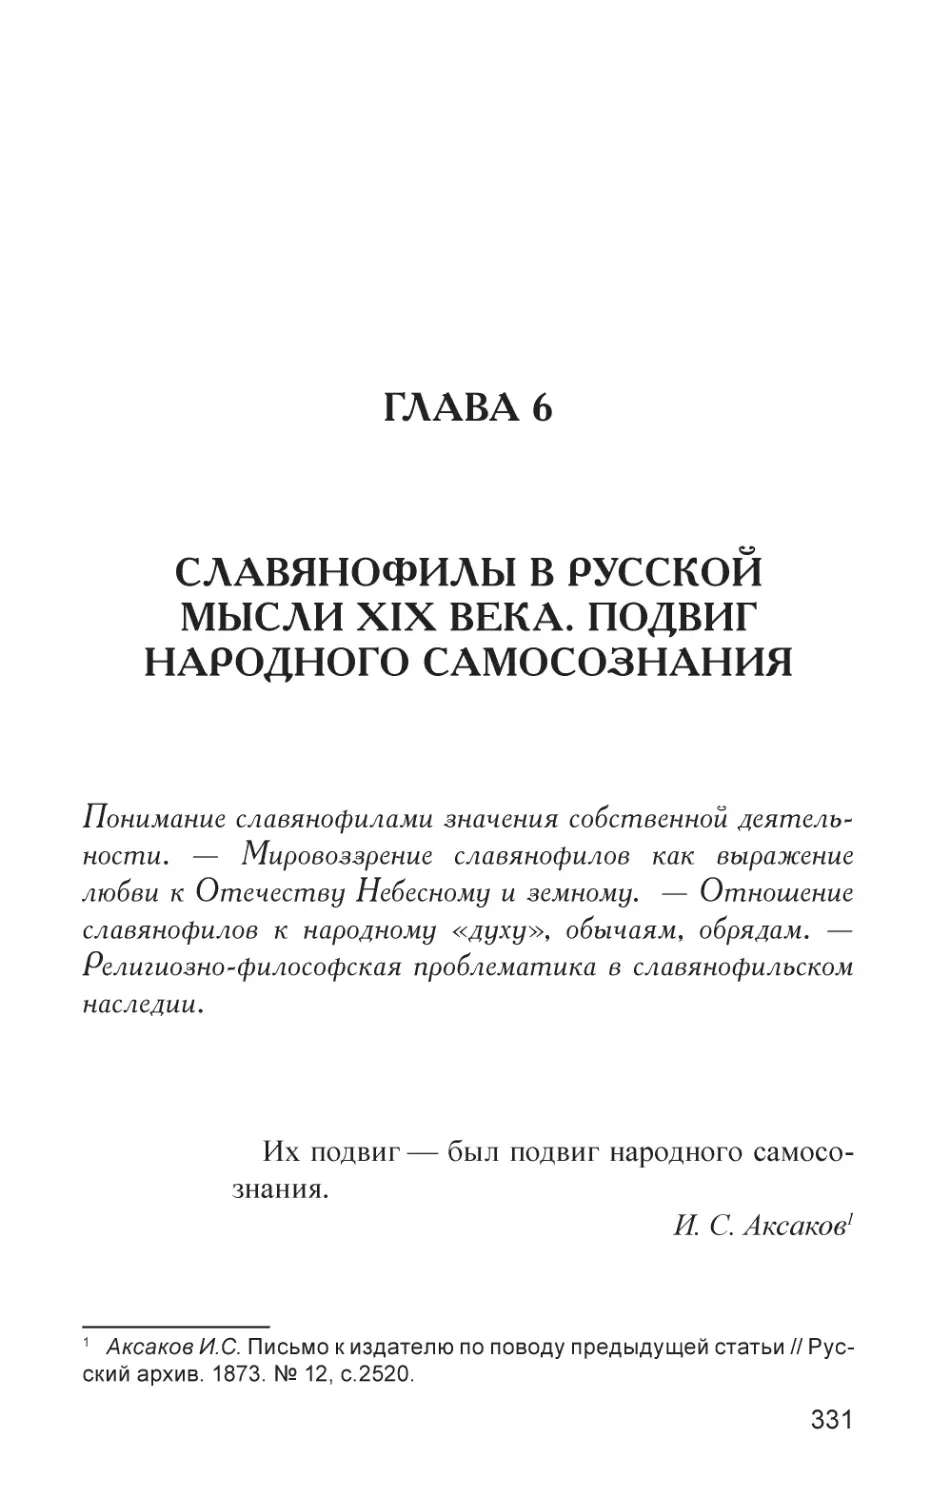 Глава 6
Славянофилы в русской мысли XIX века. Подвиг народного самосознания